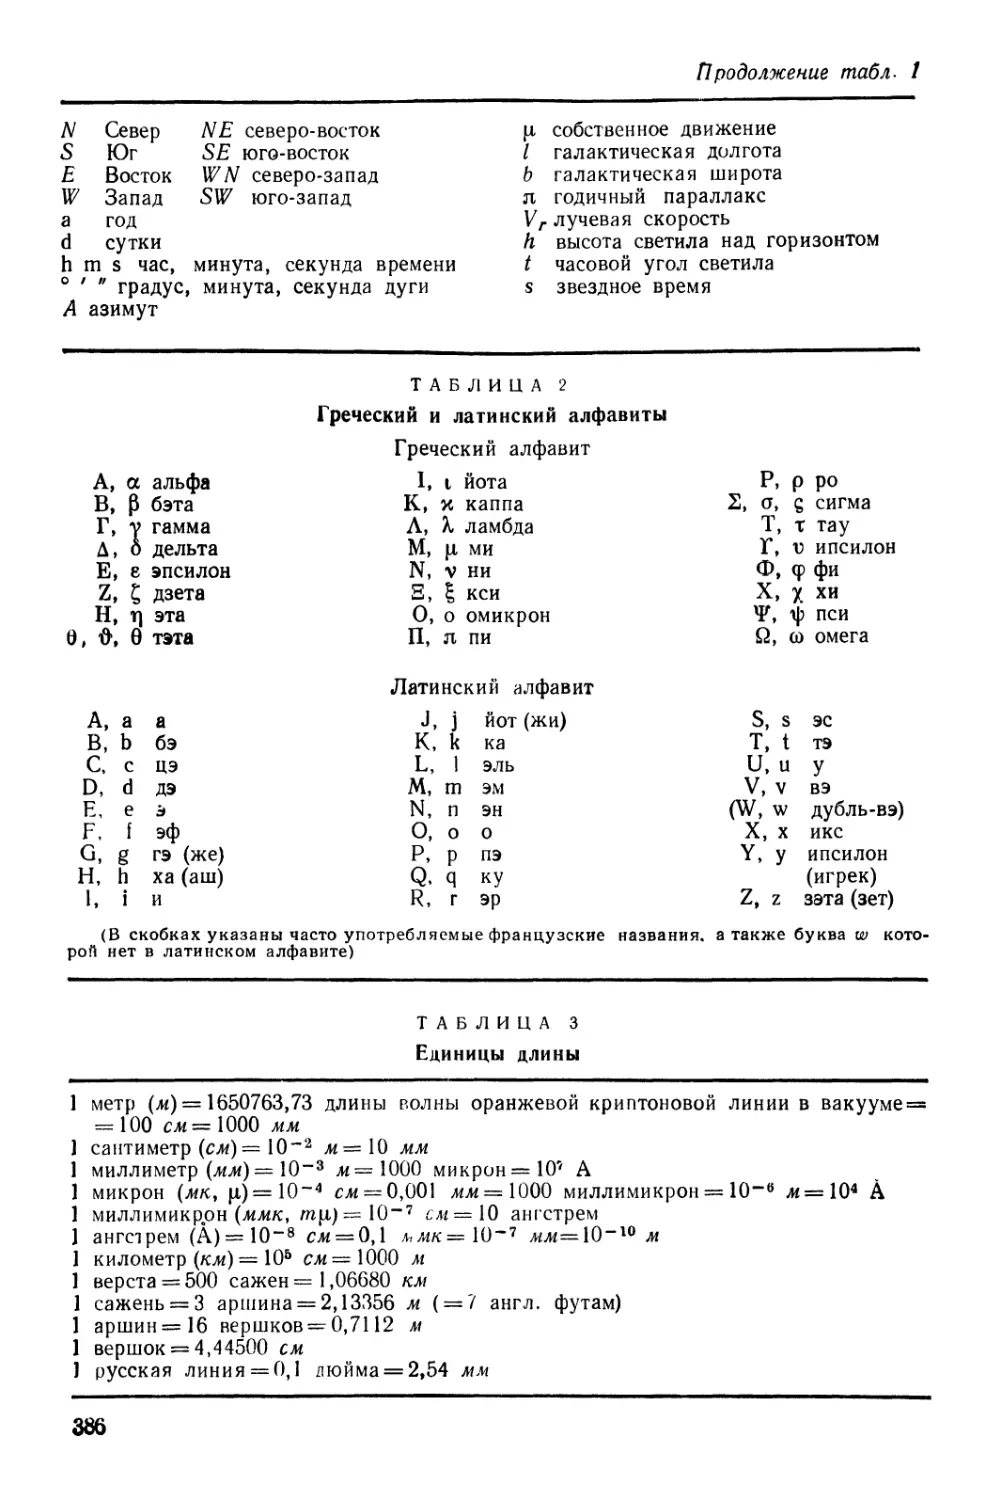 2. Греческий и латинский алфавиты
3. Единицы длины